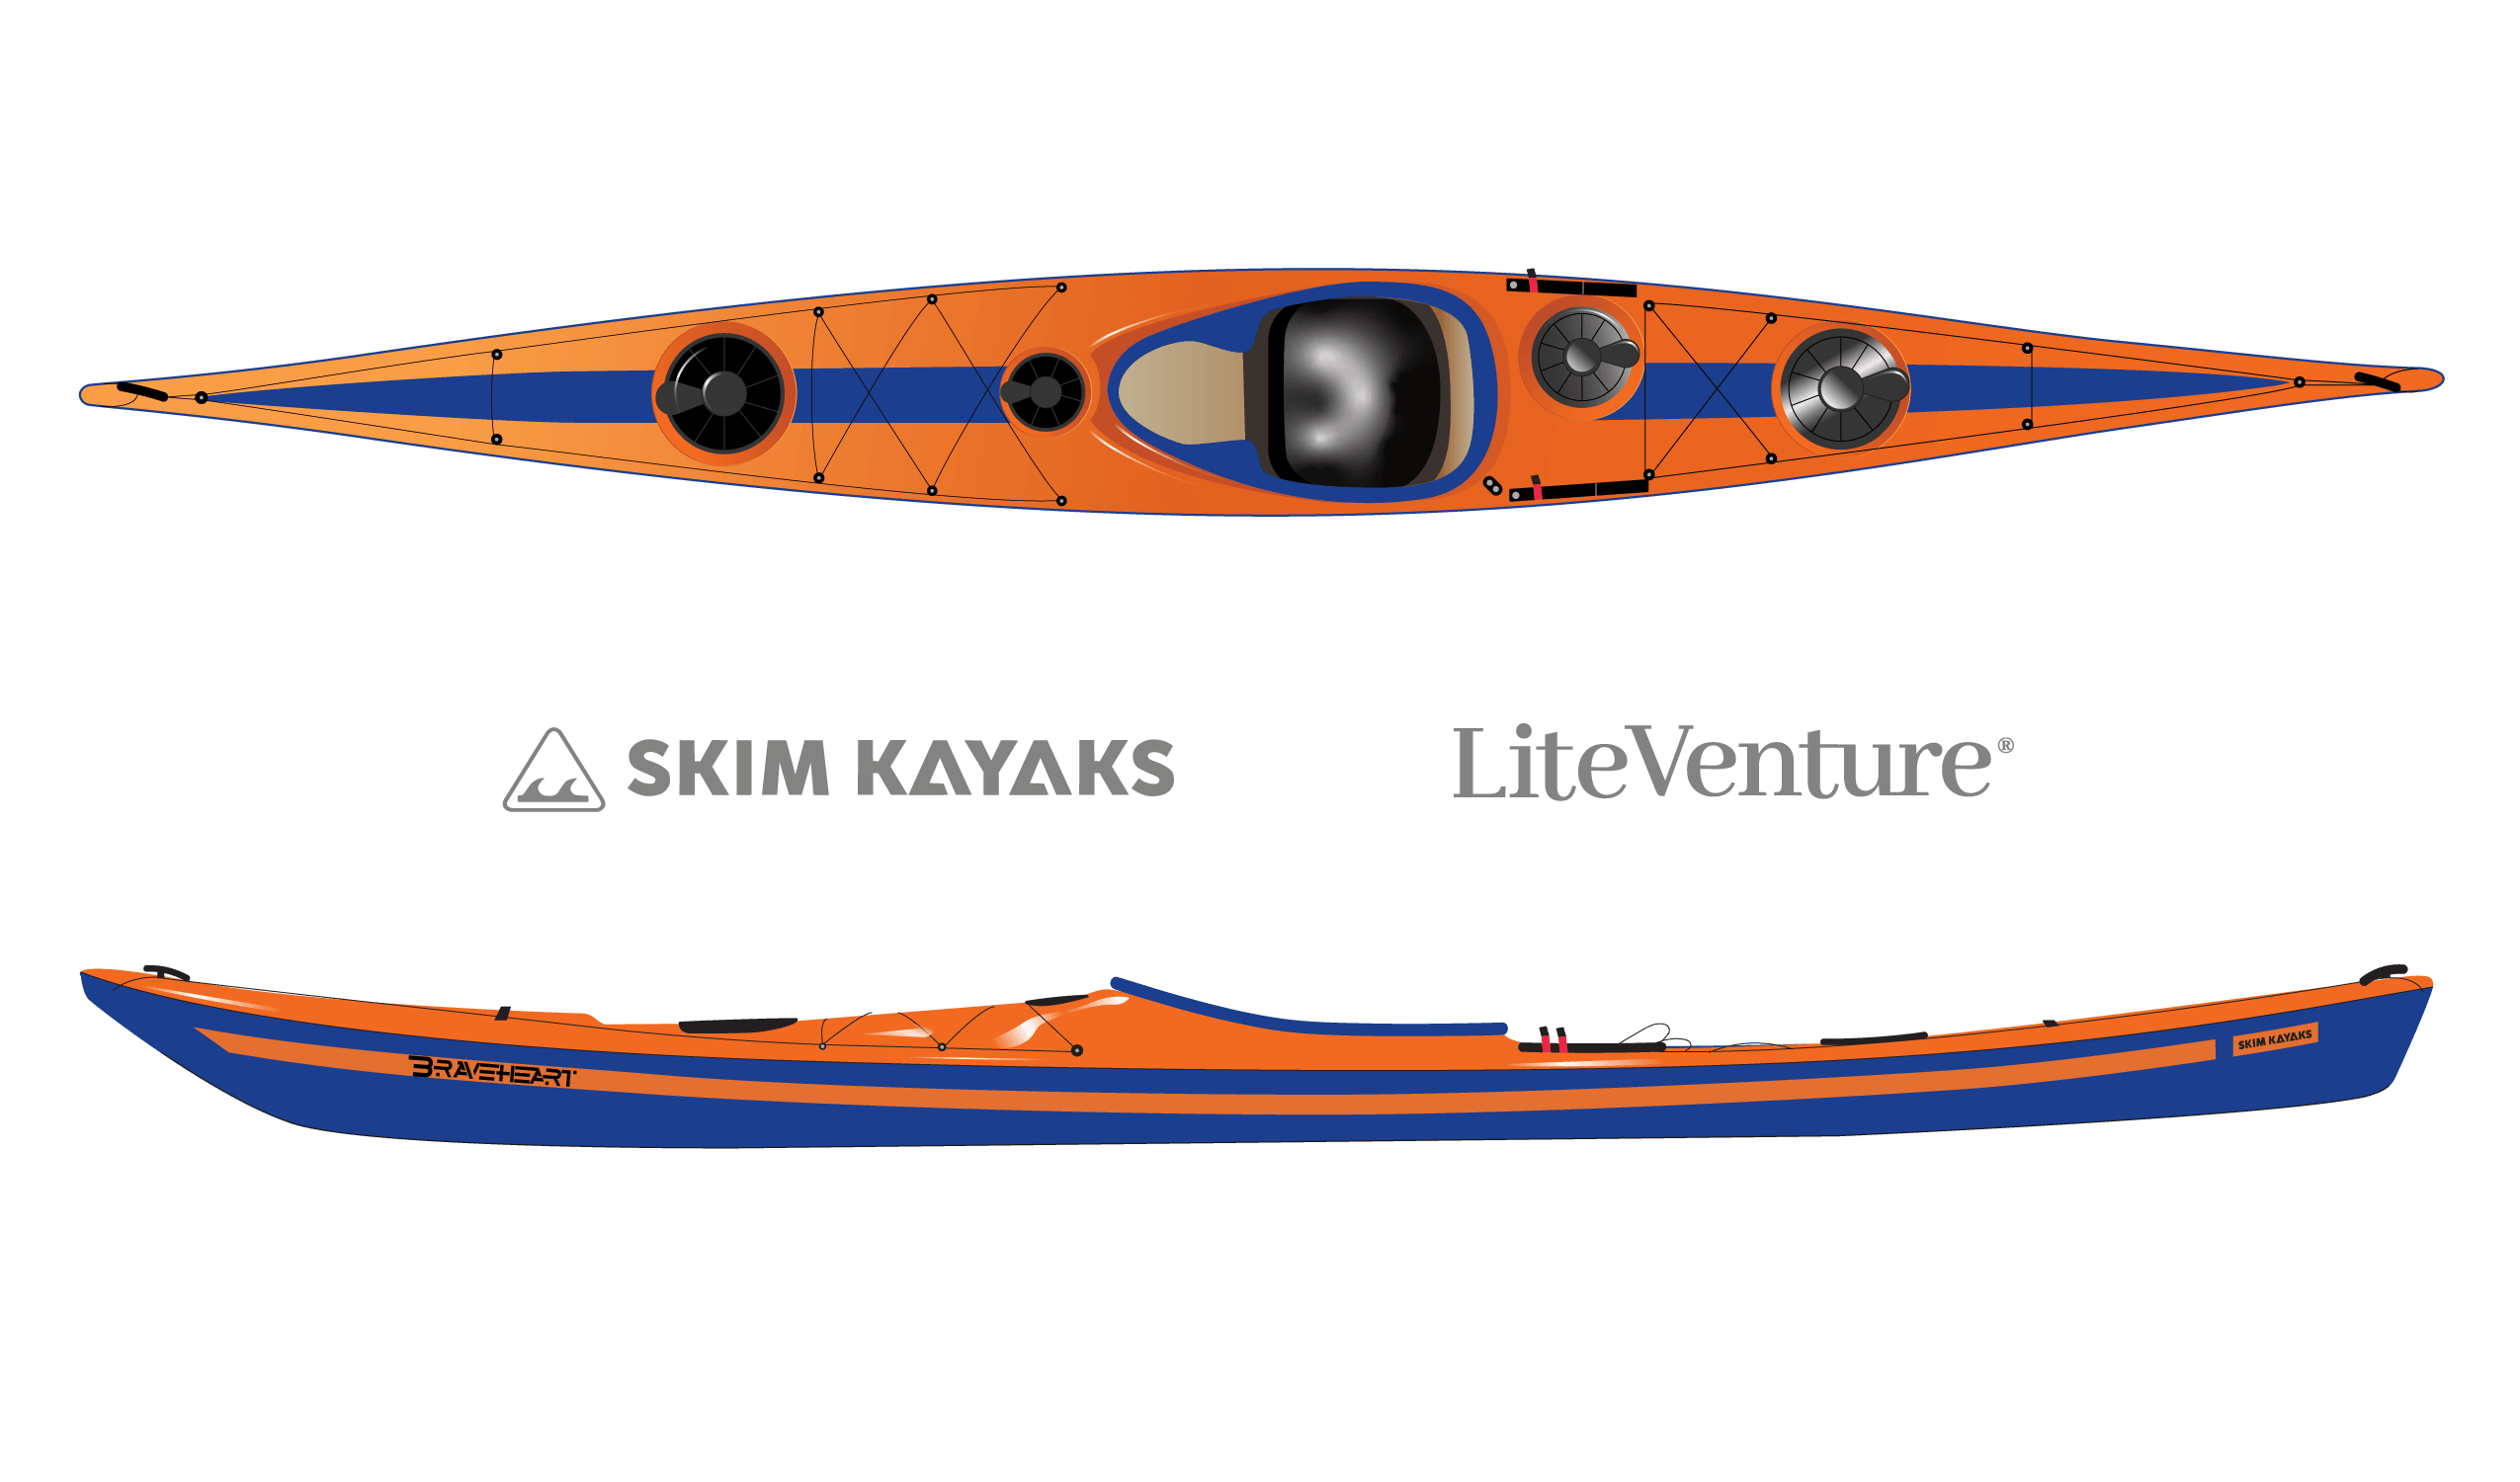 Produktbild von Kajak " Braveheart Rockhopper-orange blau " der Marke SKIM Kayaks für 4255.00 €. Erhältlich online bei Lite Venture ( www.liteventure.de )